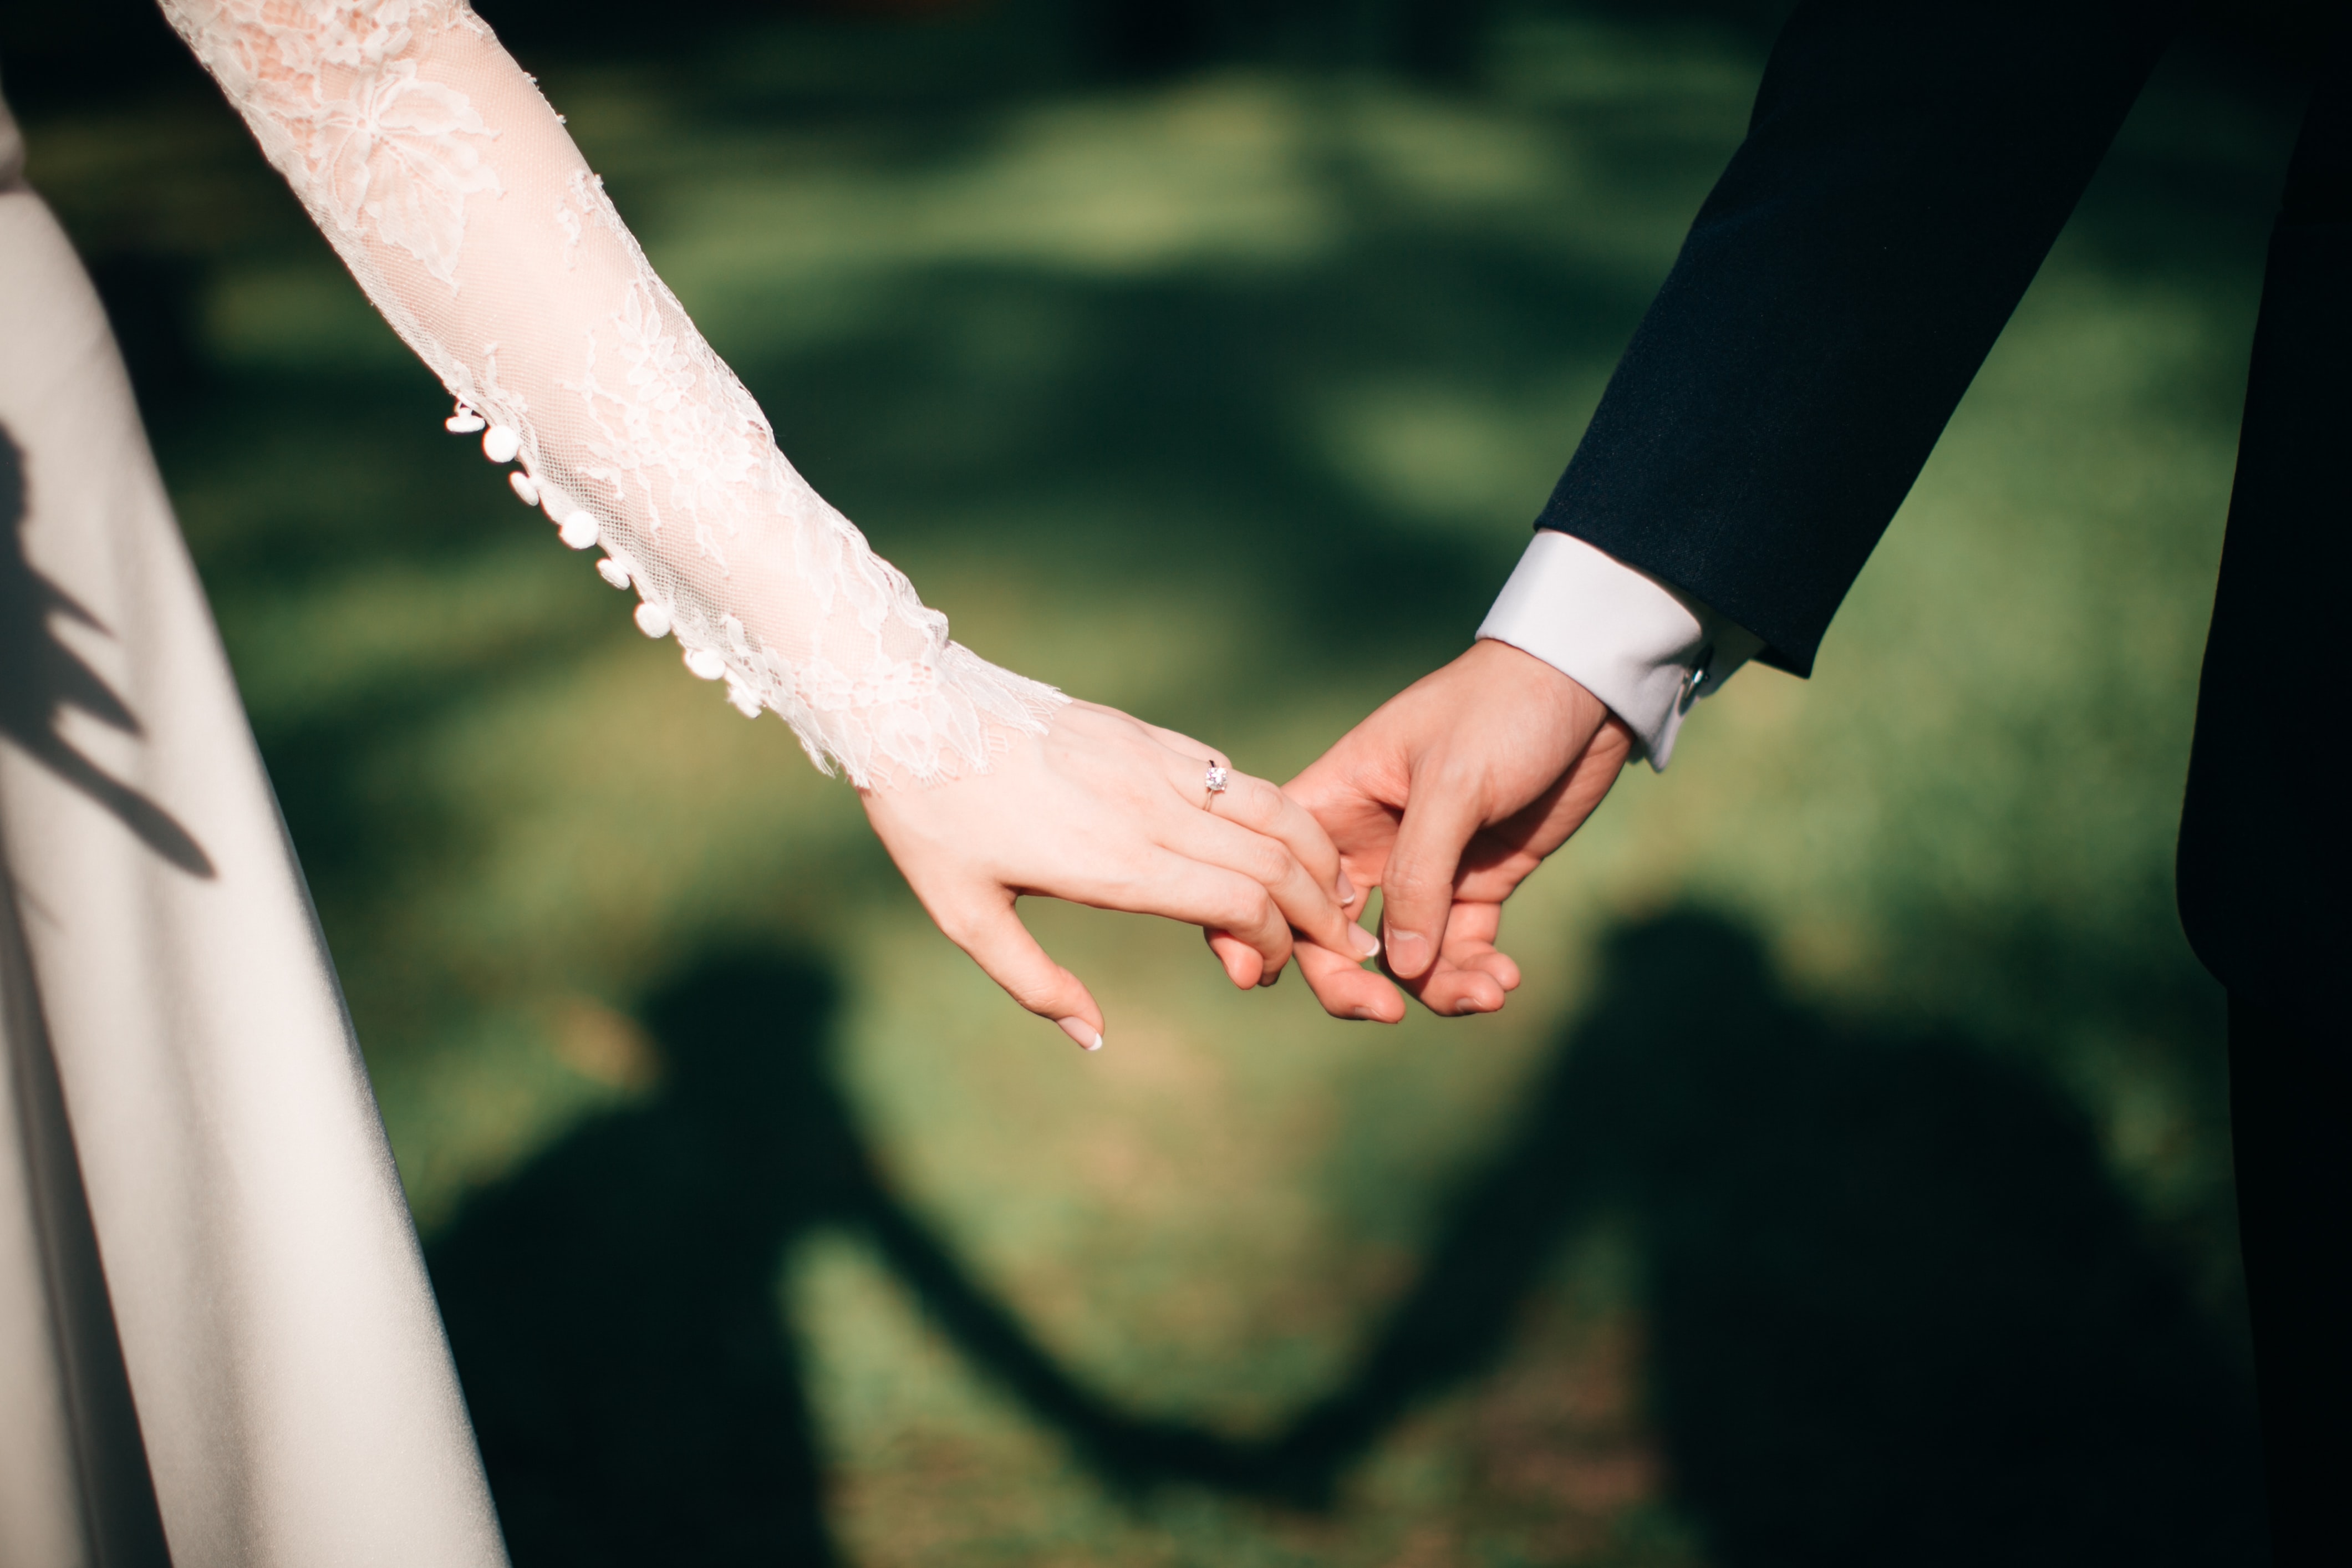 Zugewinngemeinschaft - so sieht die Ehe ohne Ehevertrag aus